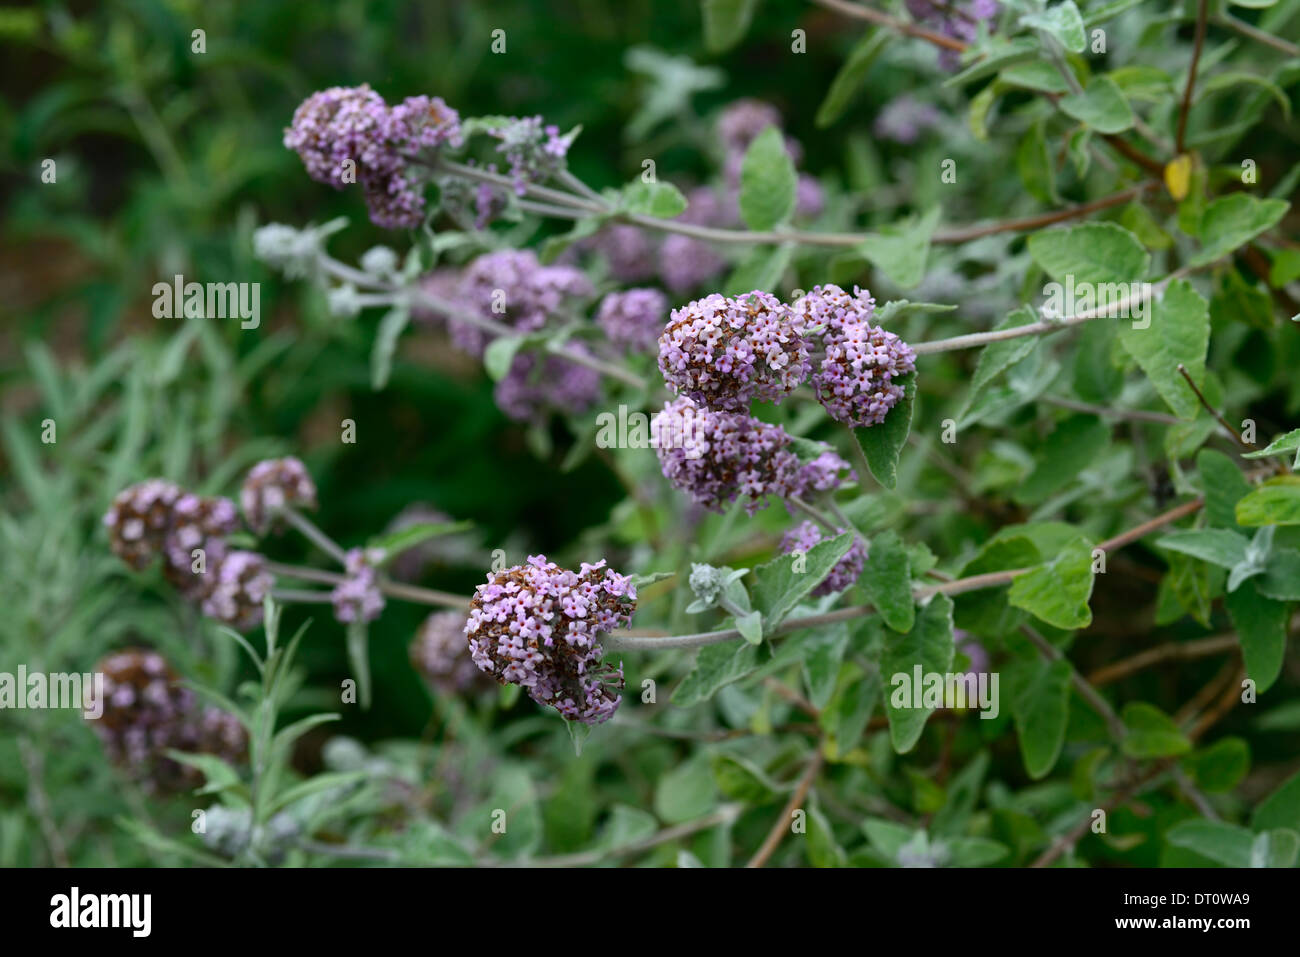 Buddleja crispa plante hybride portraits fleurs violettes spires d'arbustes feuillus selective focus buddleja Himalayan Banque D'Images